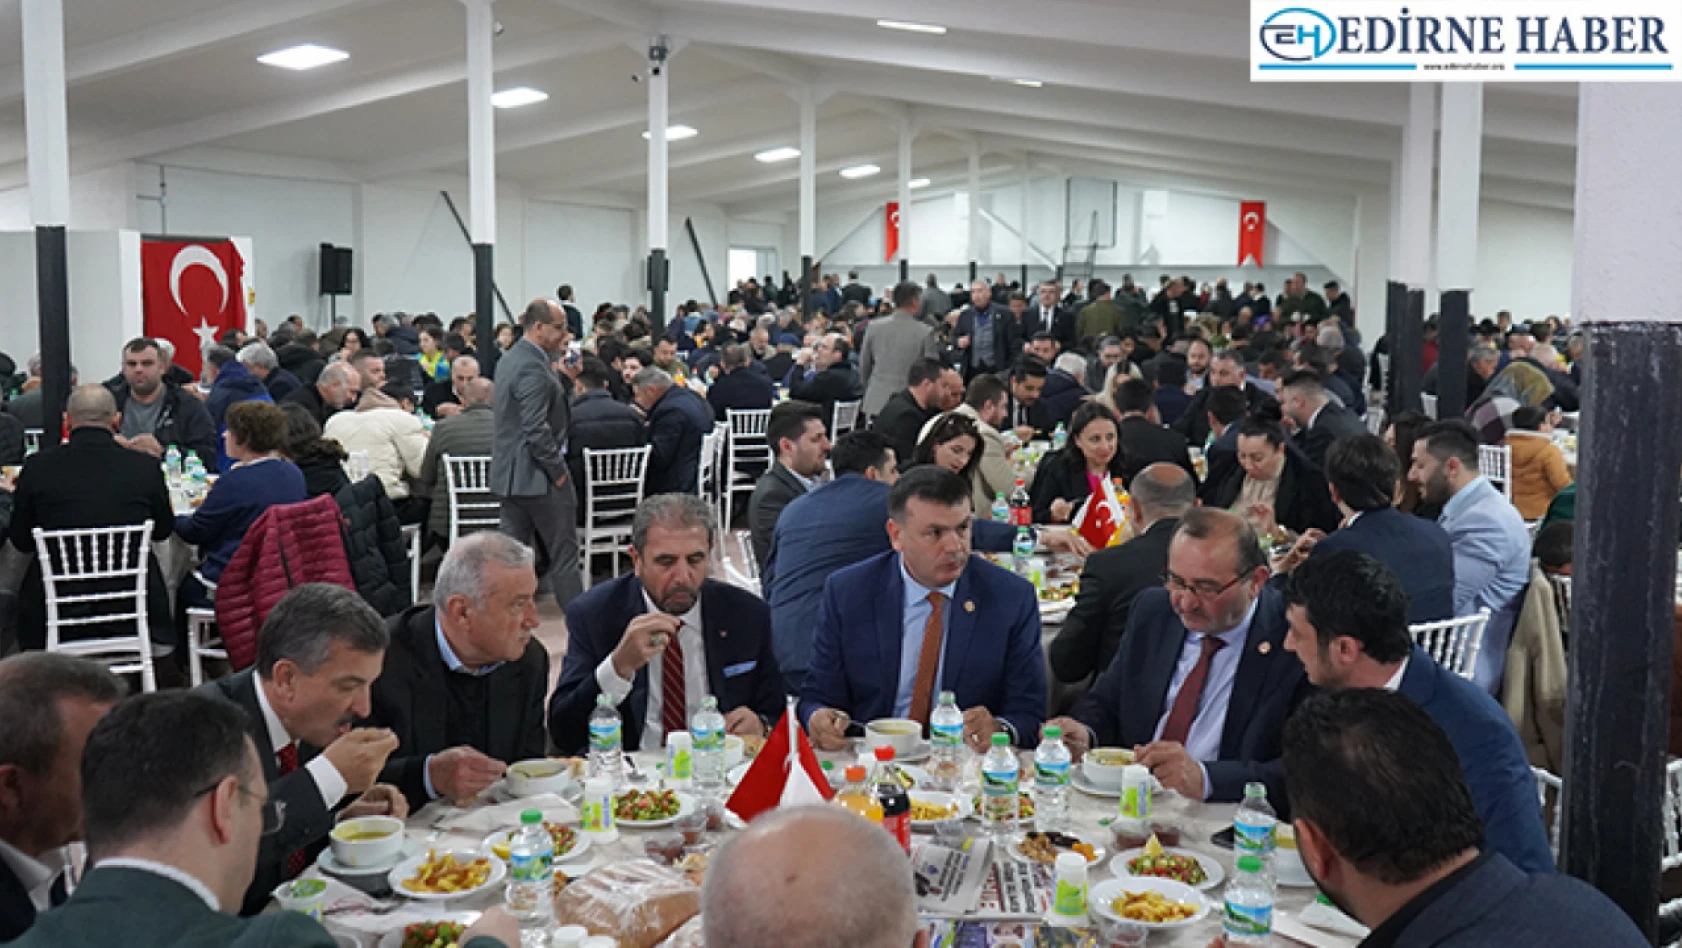 TÜMKİAD Edirne Şubesi iftar programı düzenlendi